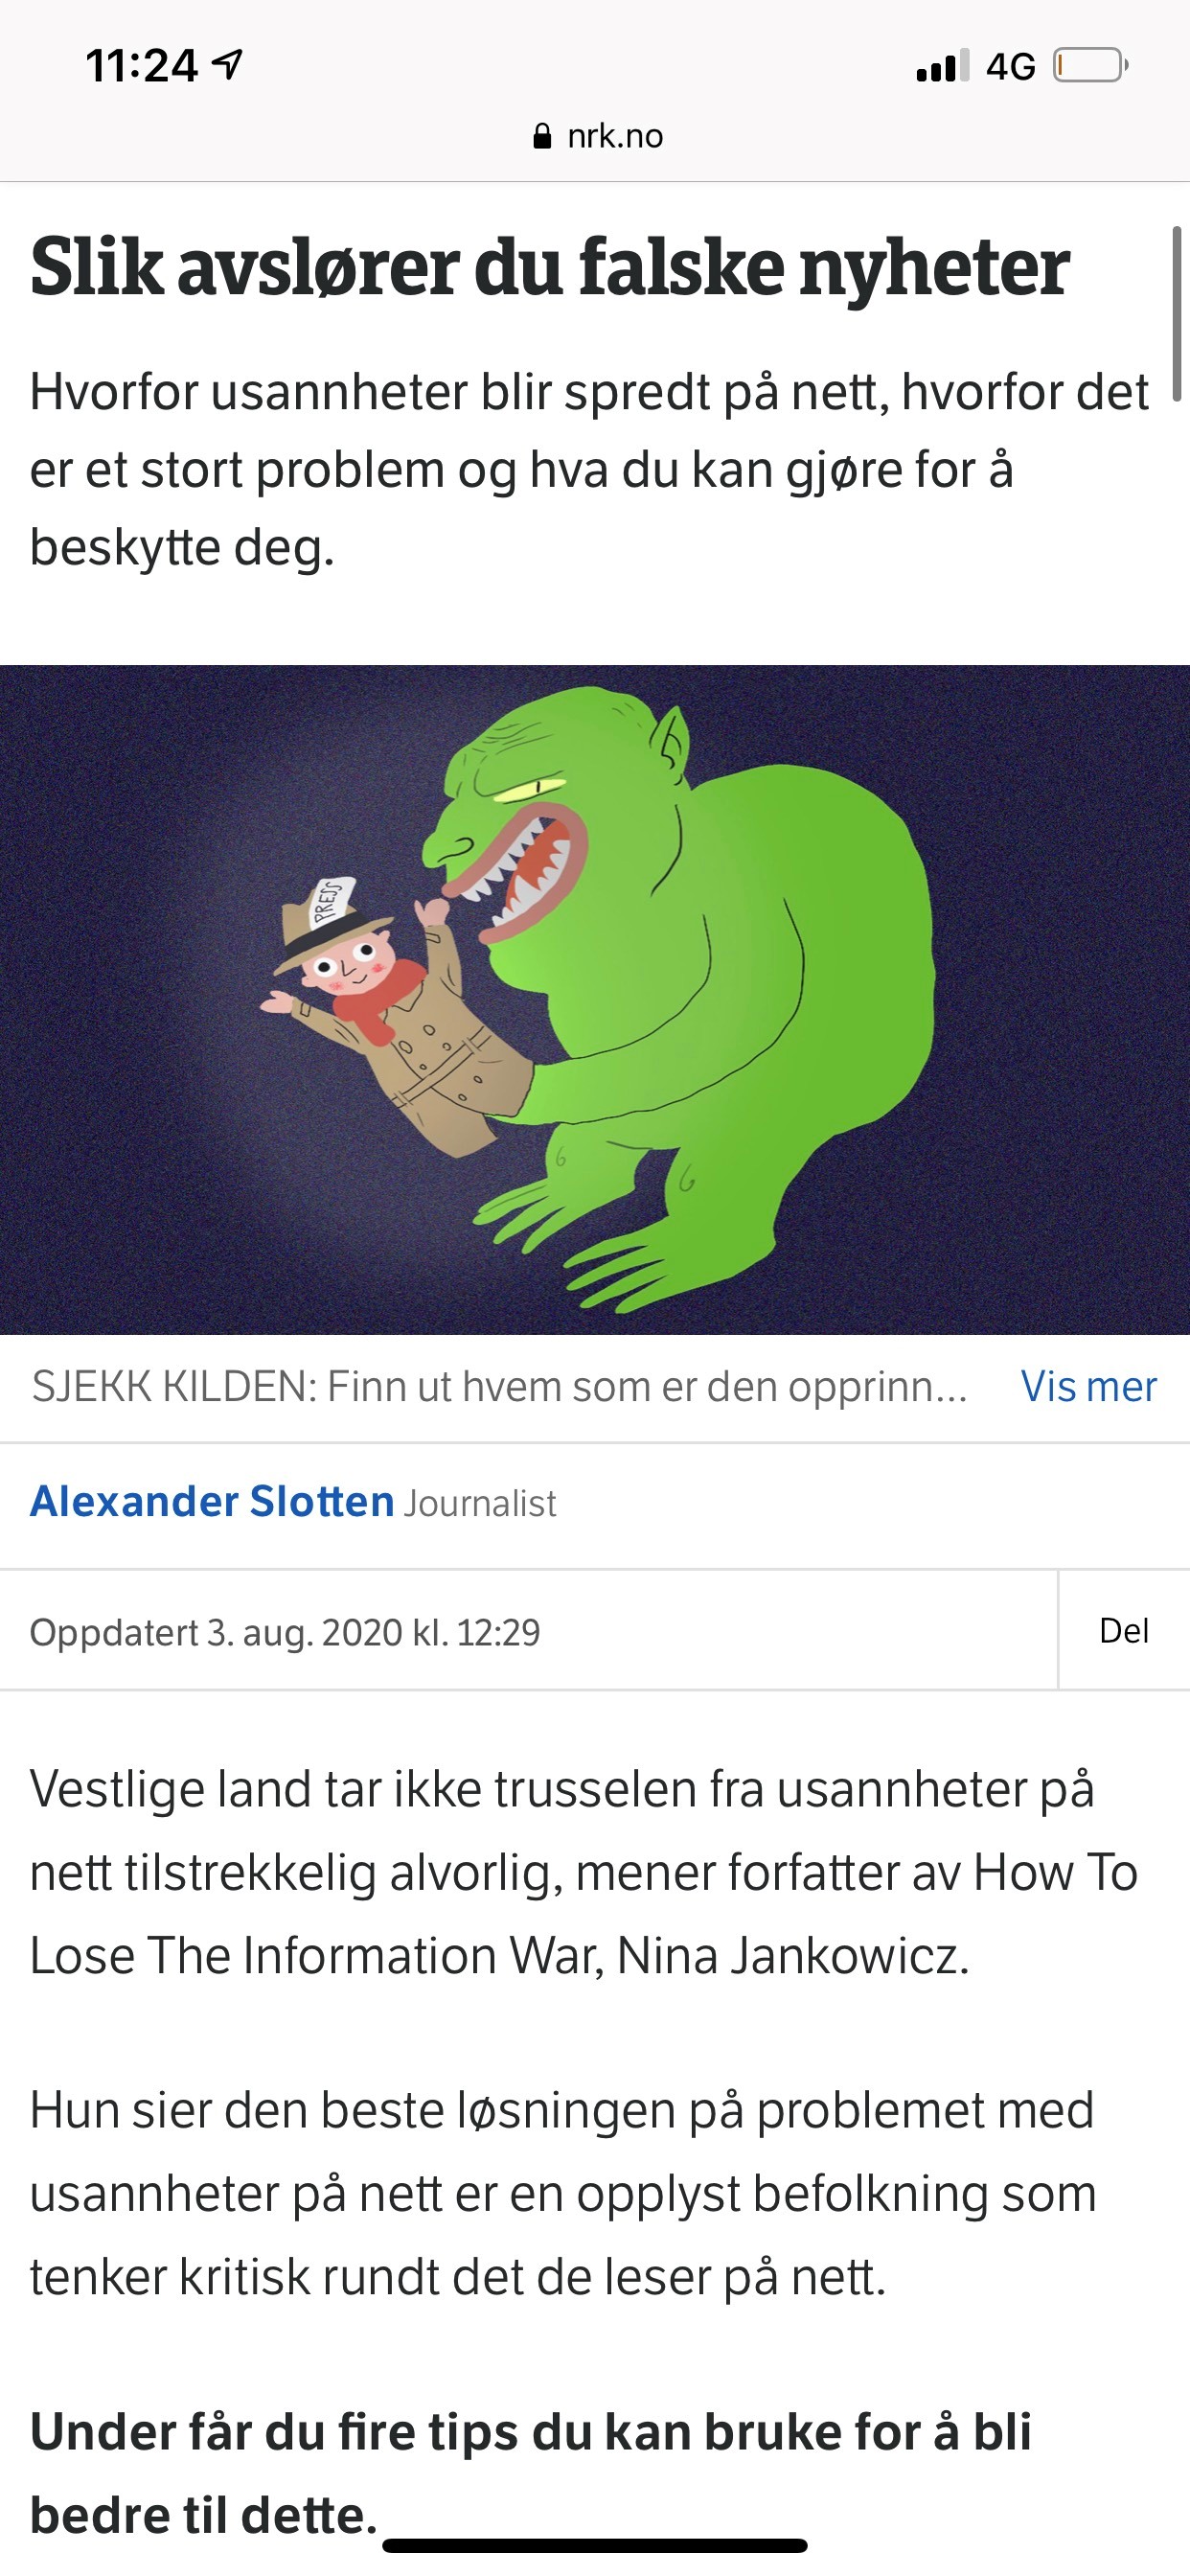 Slik avslører du falske nyheter, Alexander Slotten for NRK Nyheter.